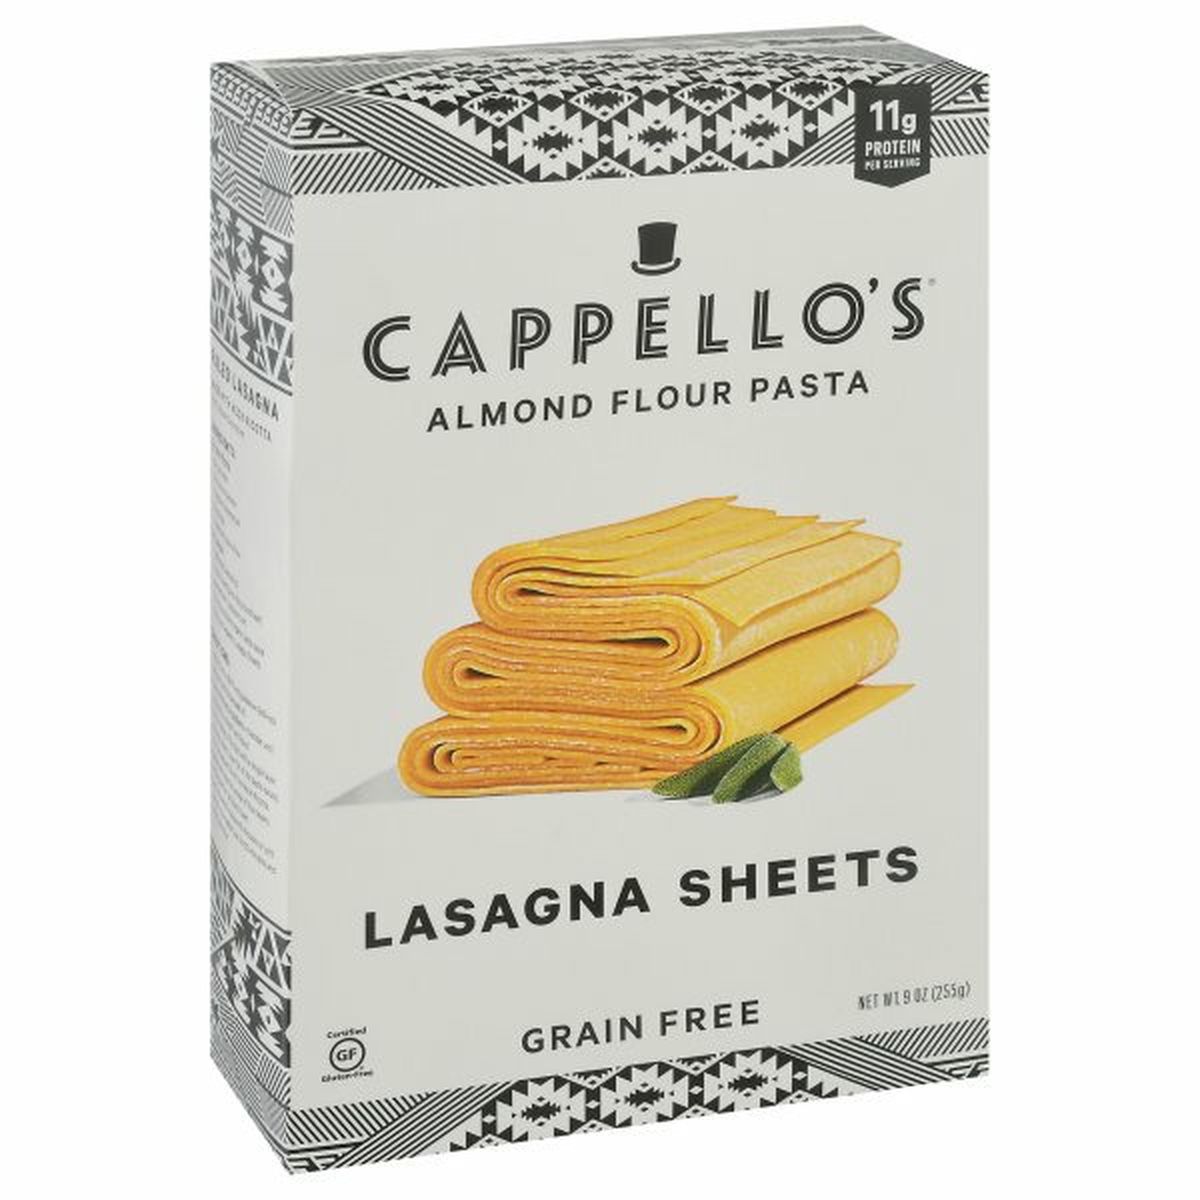 Calories in Cappello's Lasagna Sheets